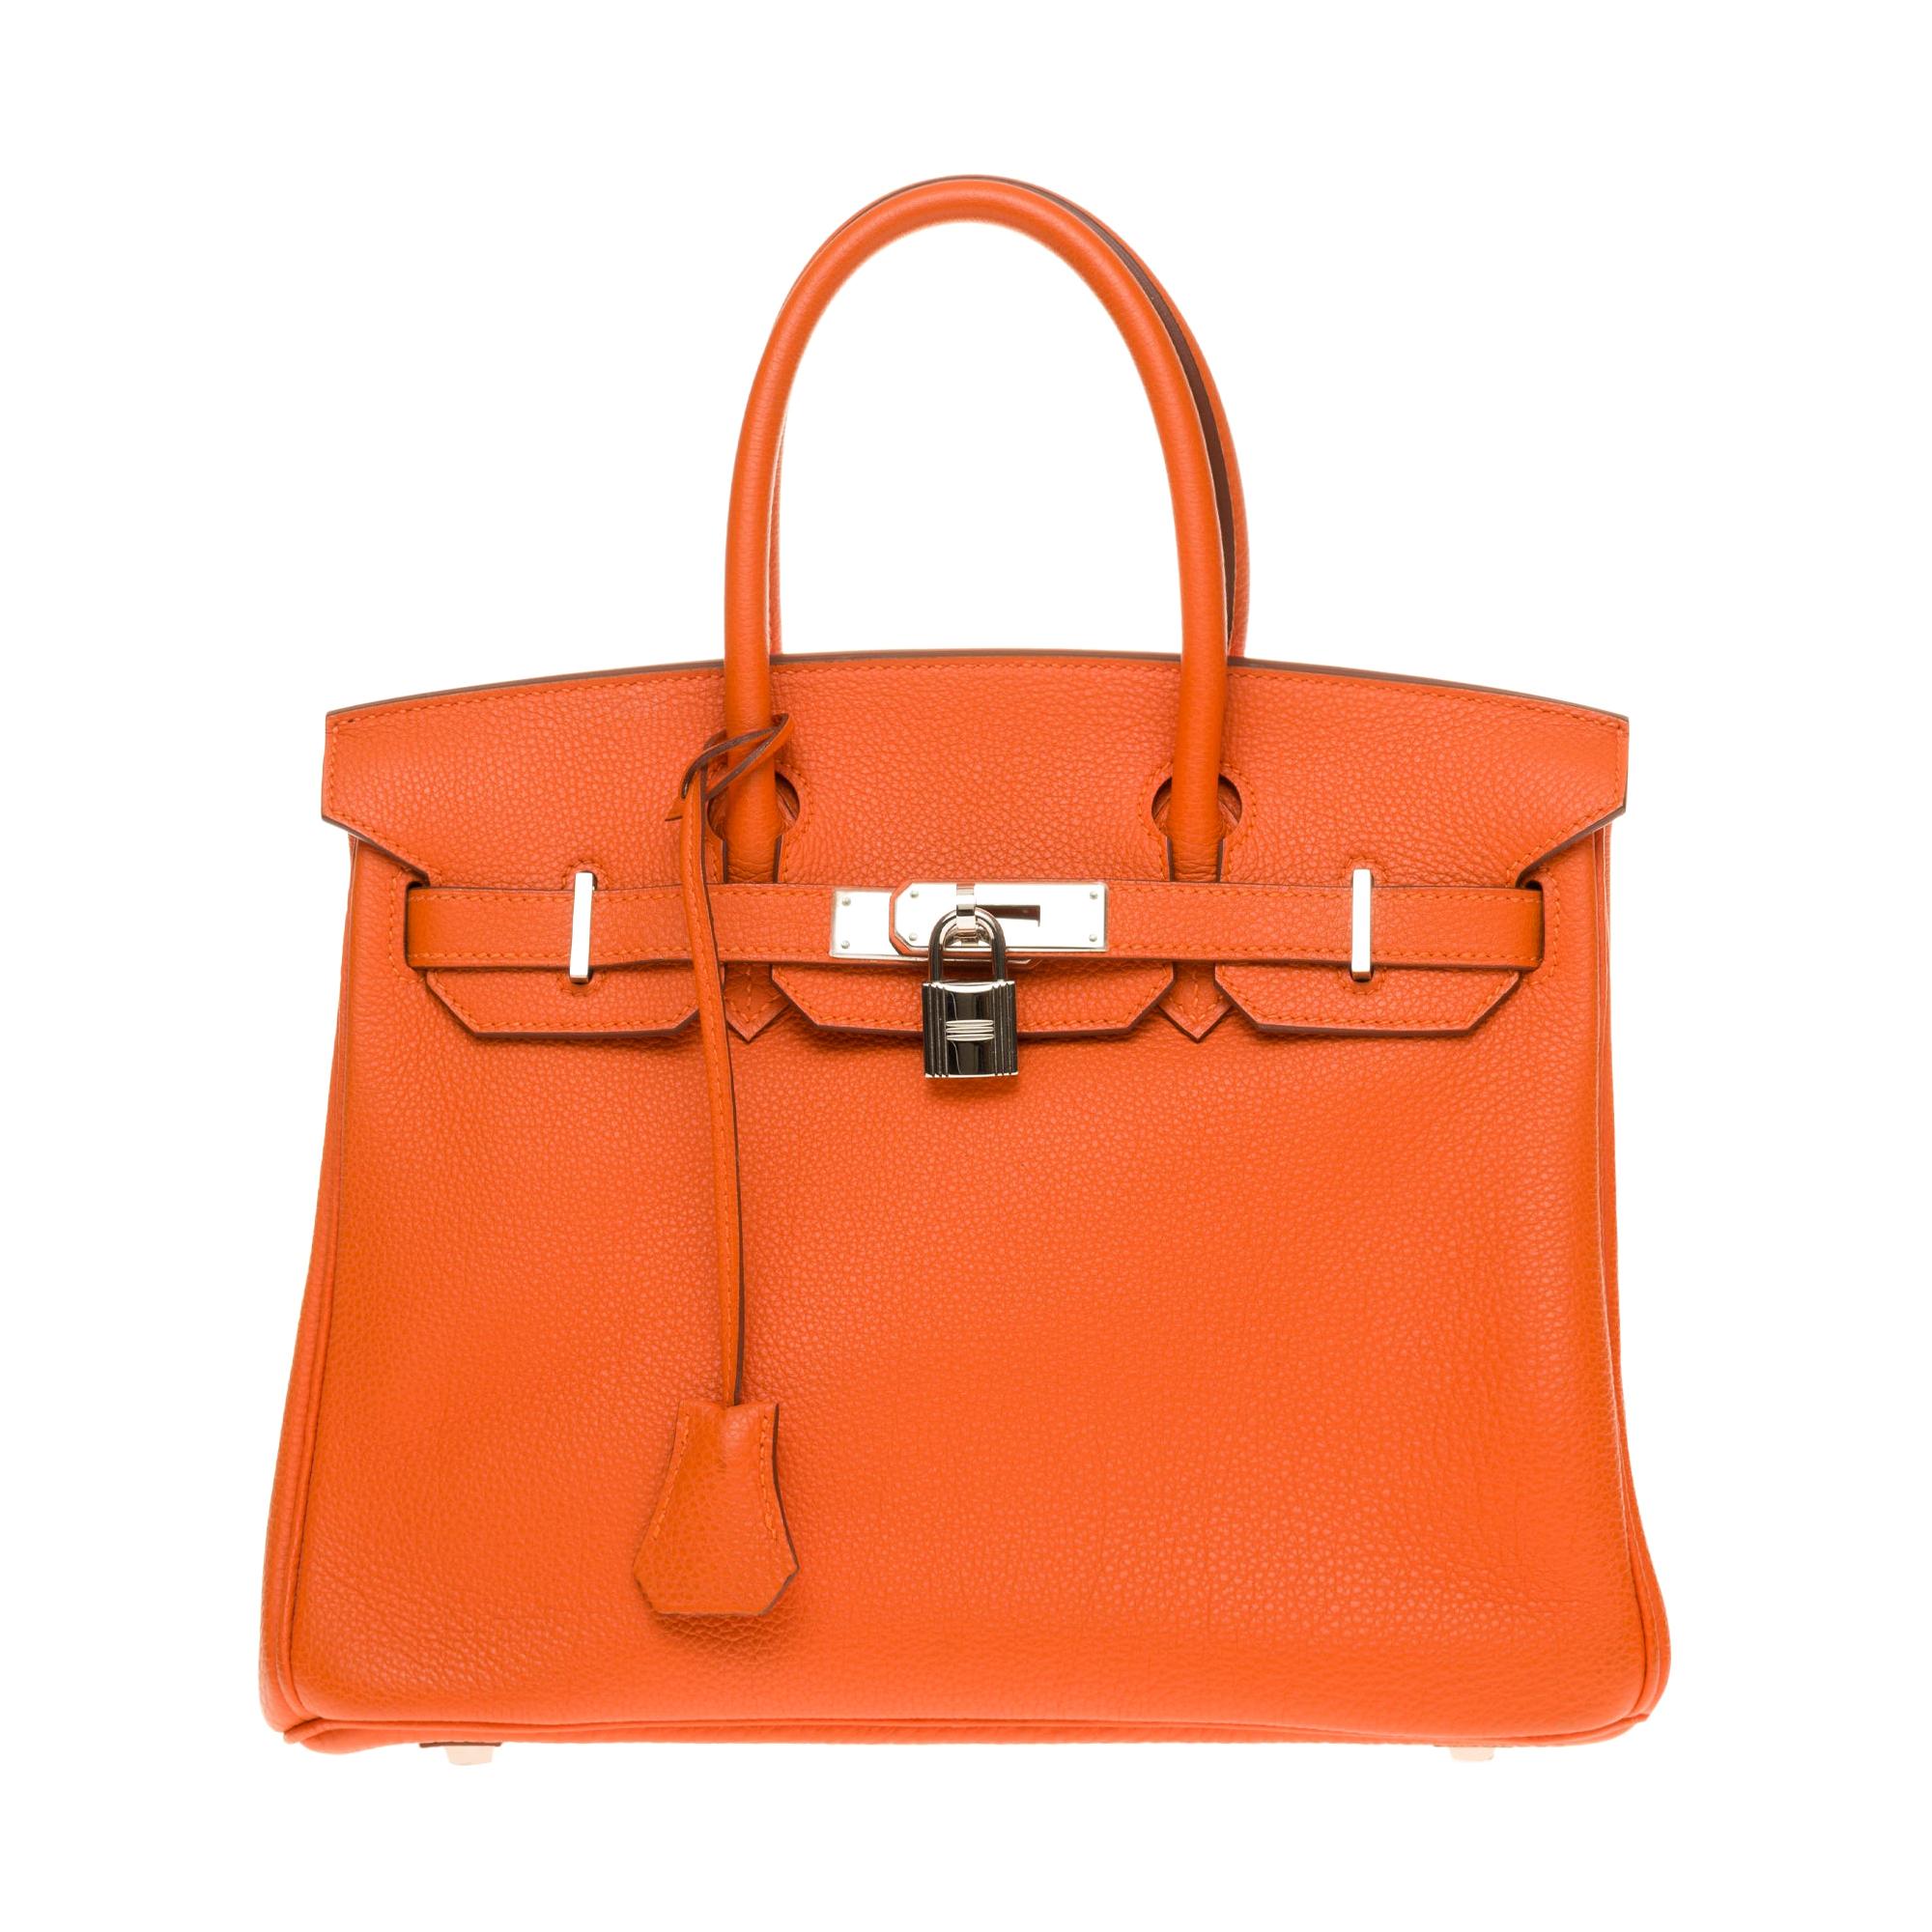 Hermès Birkin 30 handbag in Togo orange leather, PHW, new condition 